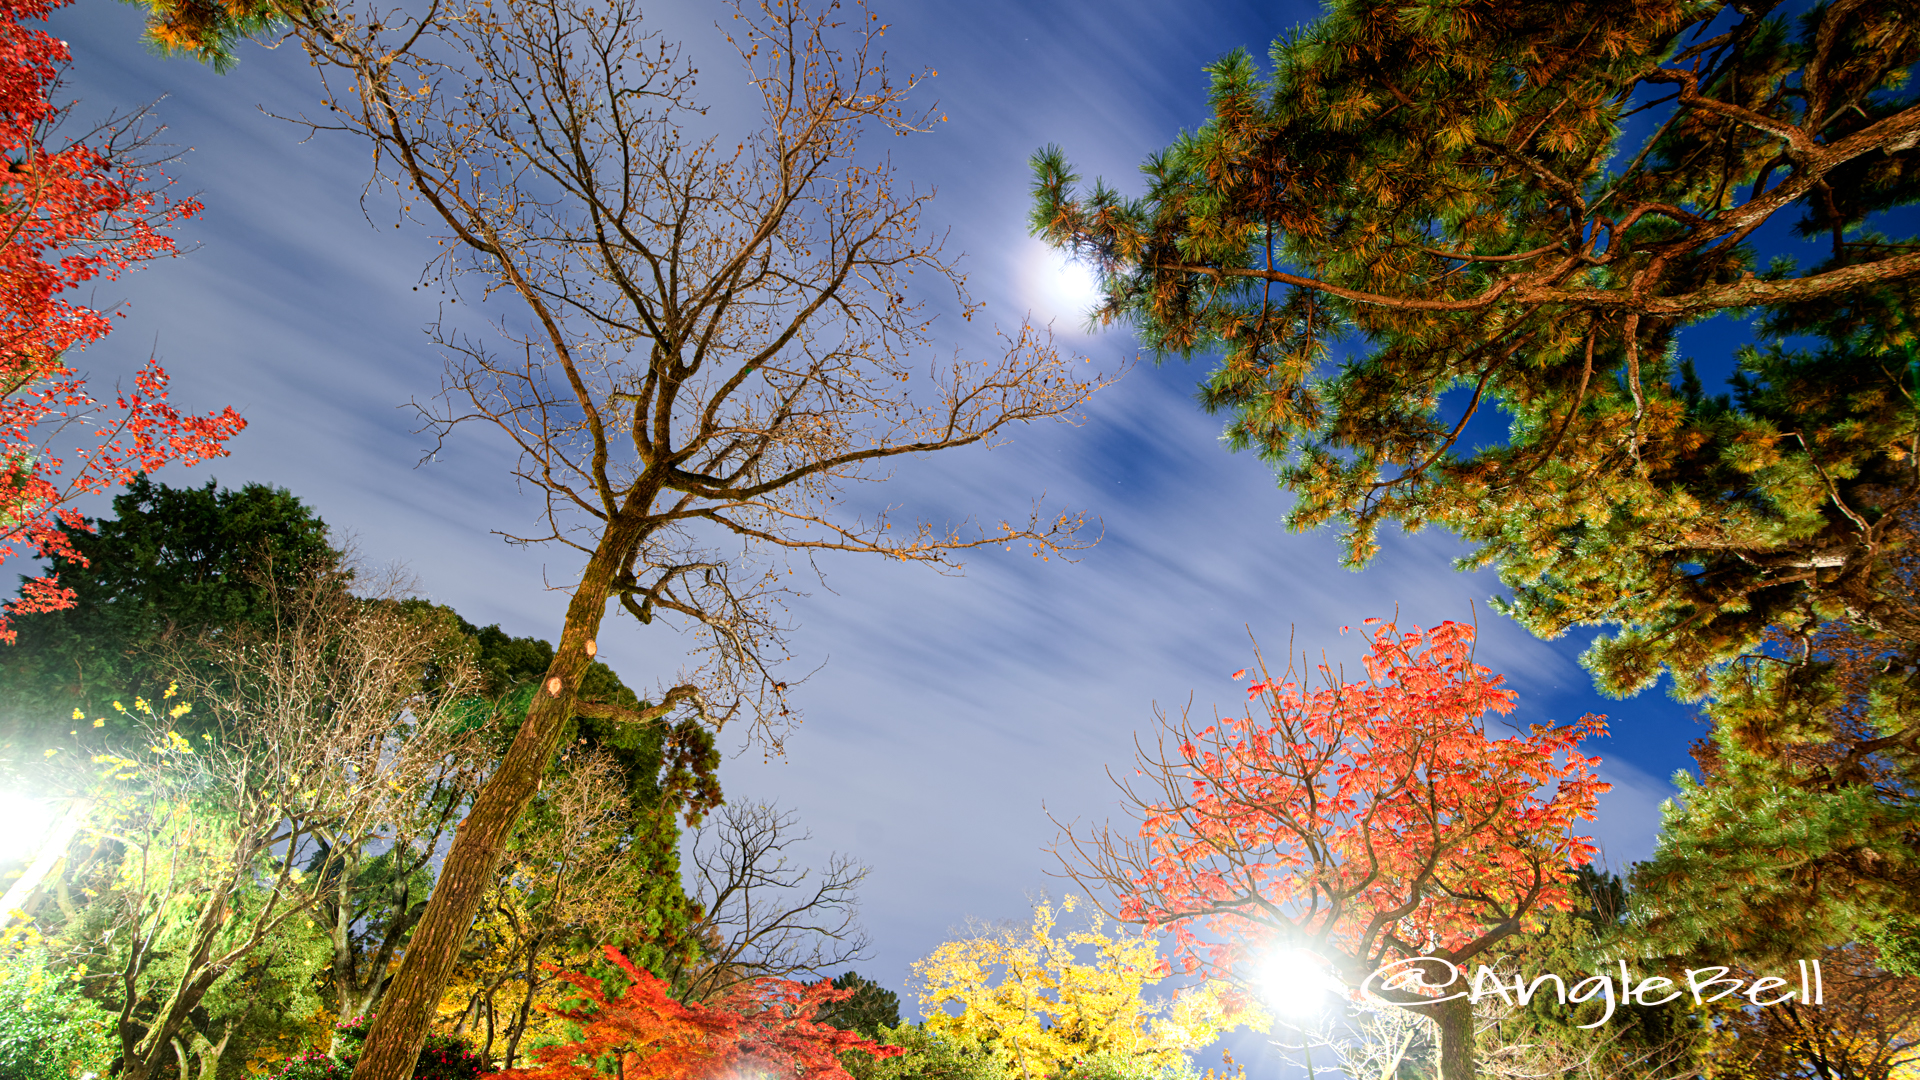 月夜 鶴舞公園 秋の池 公園の樹木と夜空 2019